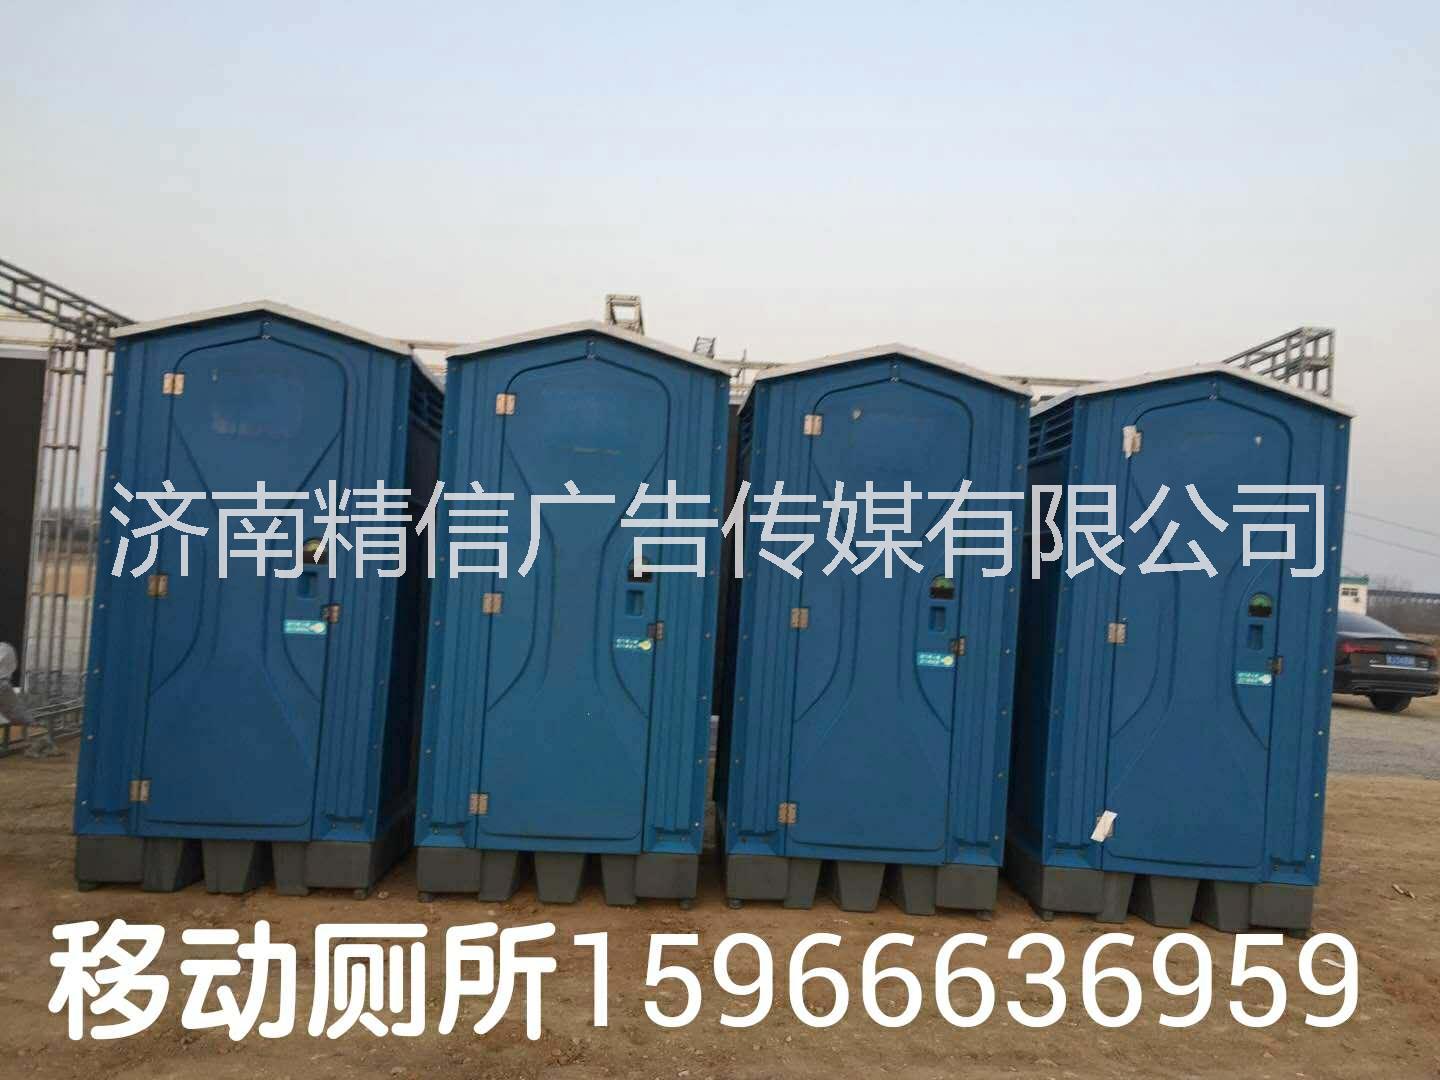 淄博厕所出租 移动卫生间租售